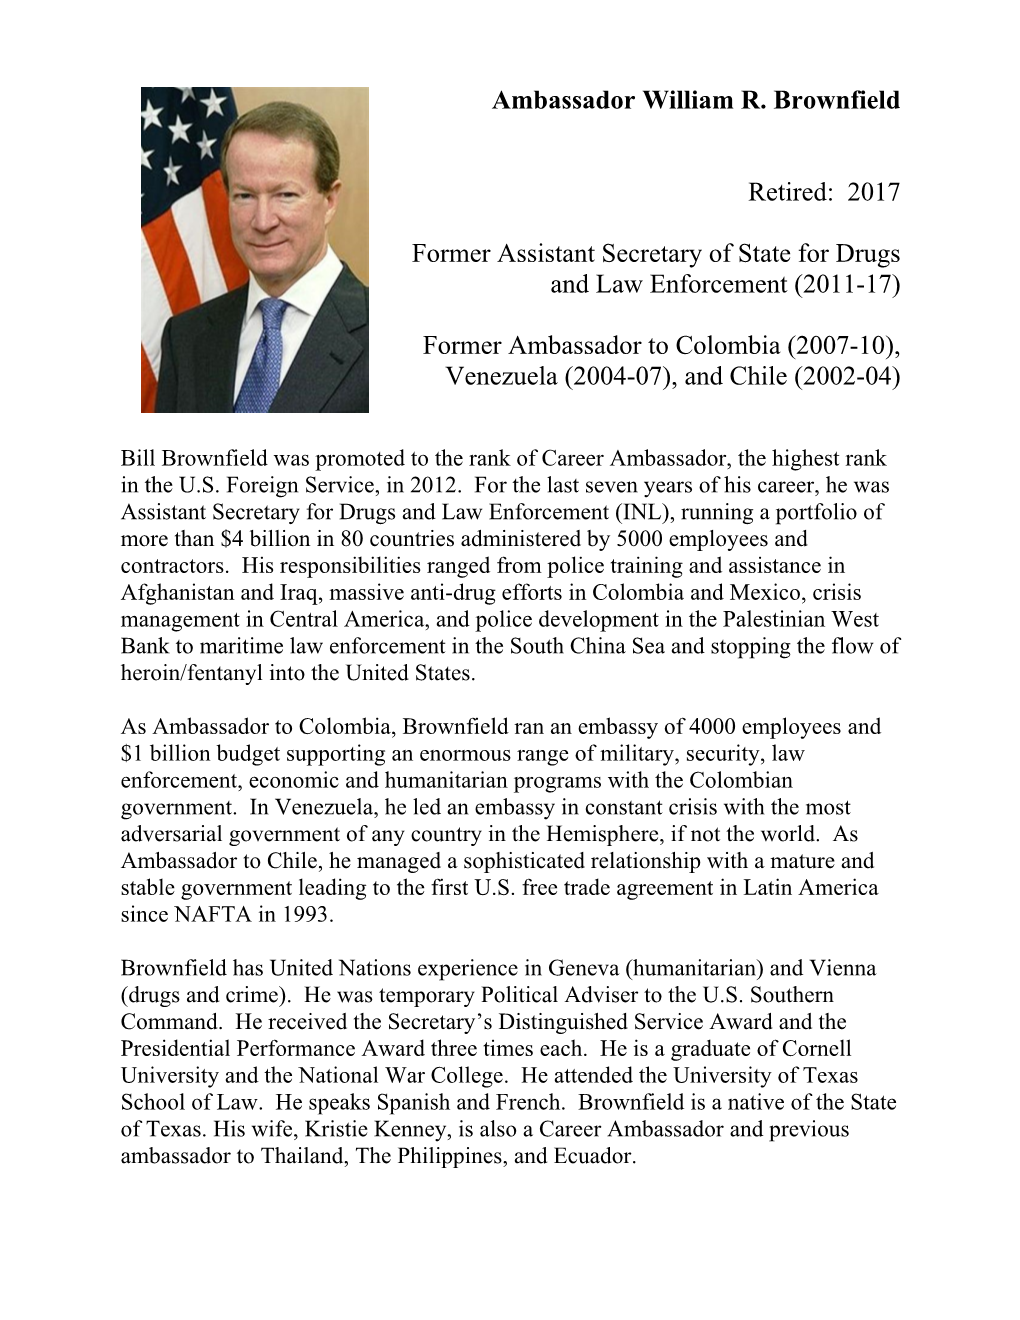 Ambassador William R. Brownfield Retired